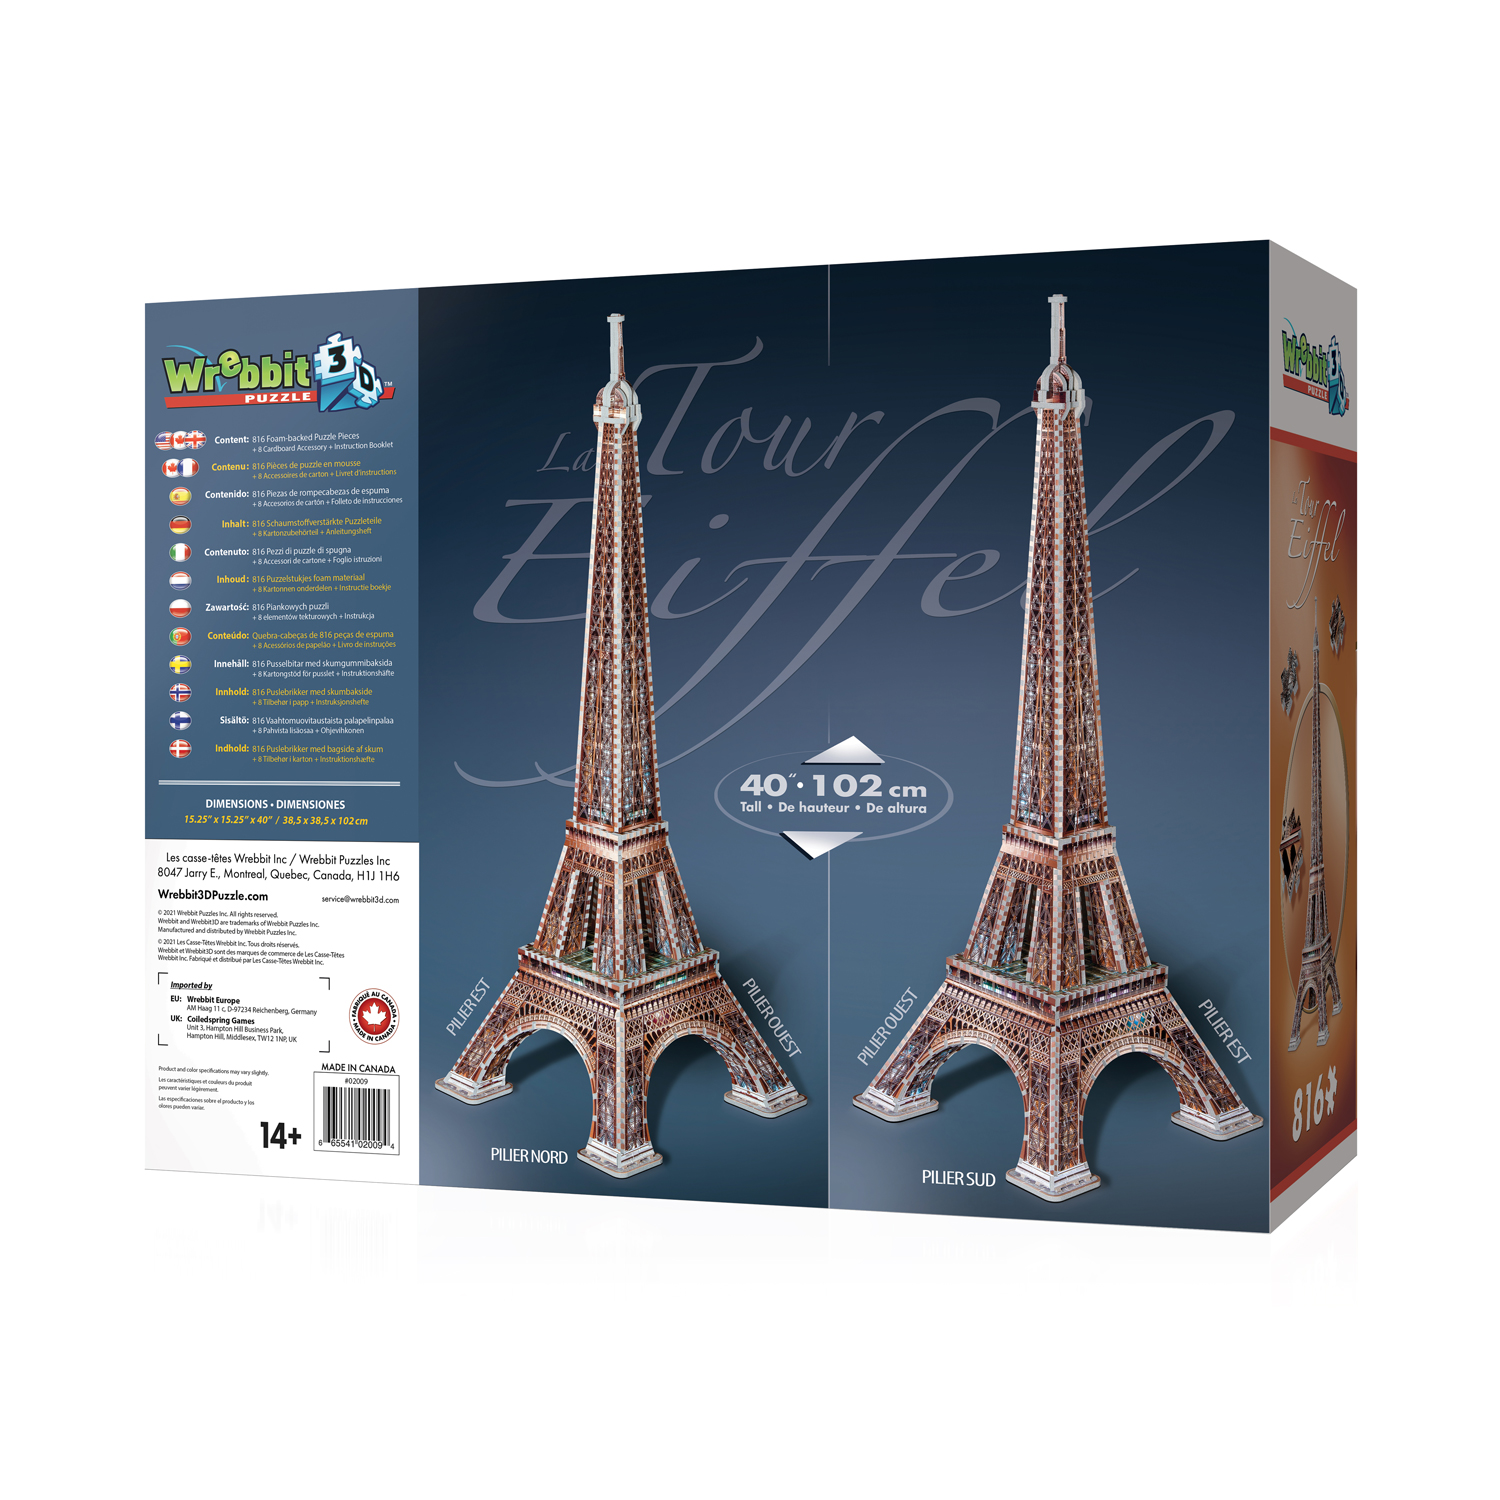 Promo Puzzle 3D Tour Eiffel Illuminée chez Géant Casino